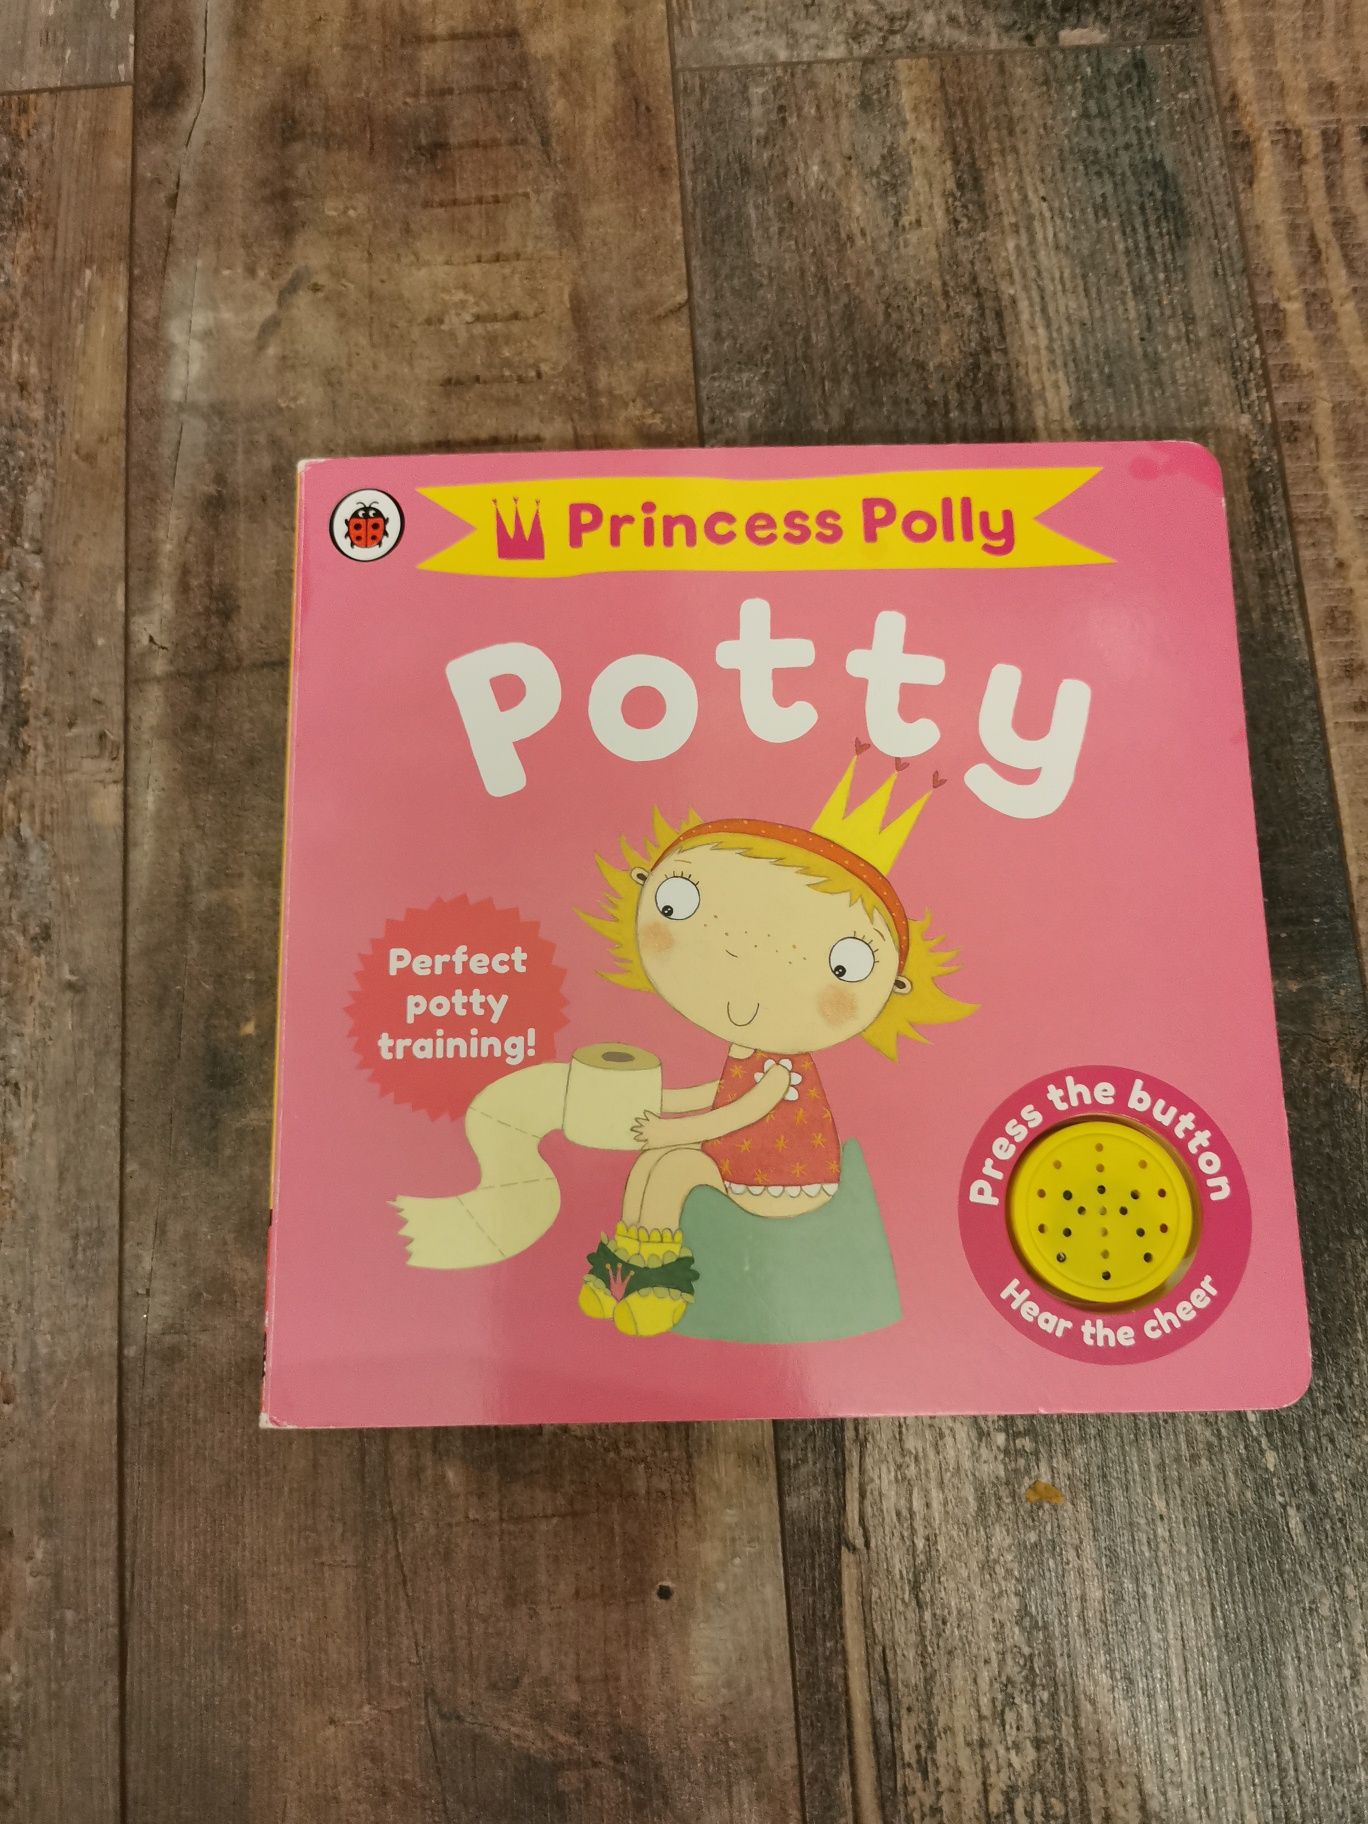 potty training, Princess polly potty, książka po angielsku